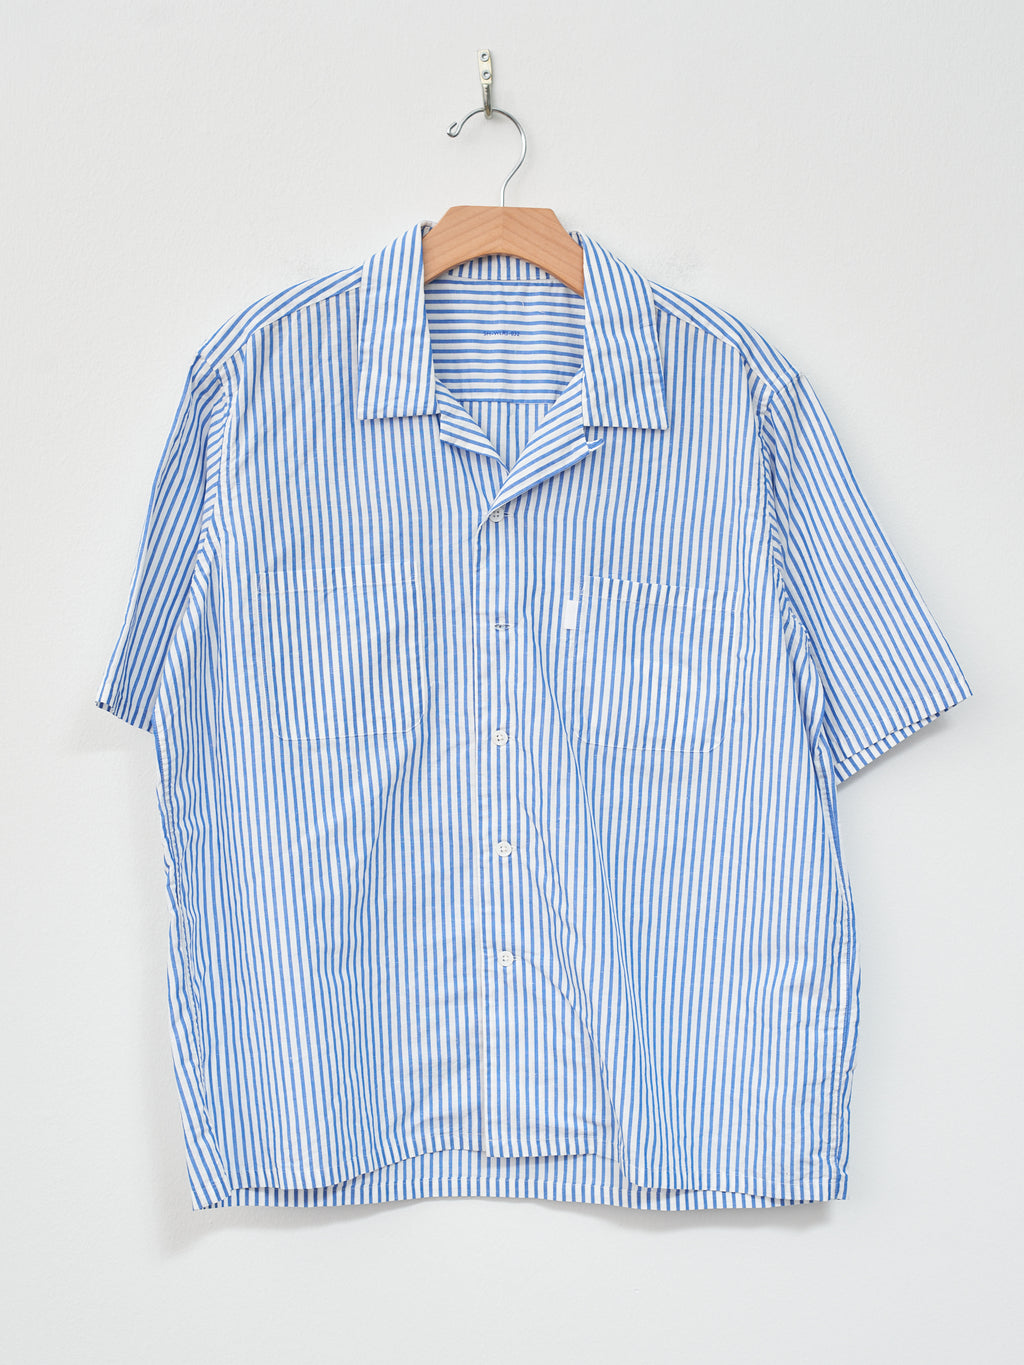 Namu Shop - SH Shirt Short Sleeve Open Collar Shirt - Blue Stripe Cotton/Linen